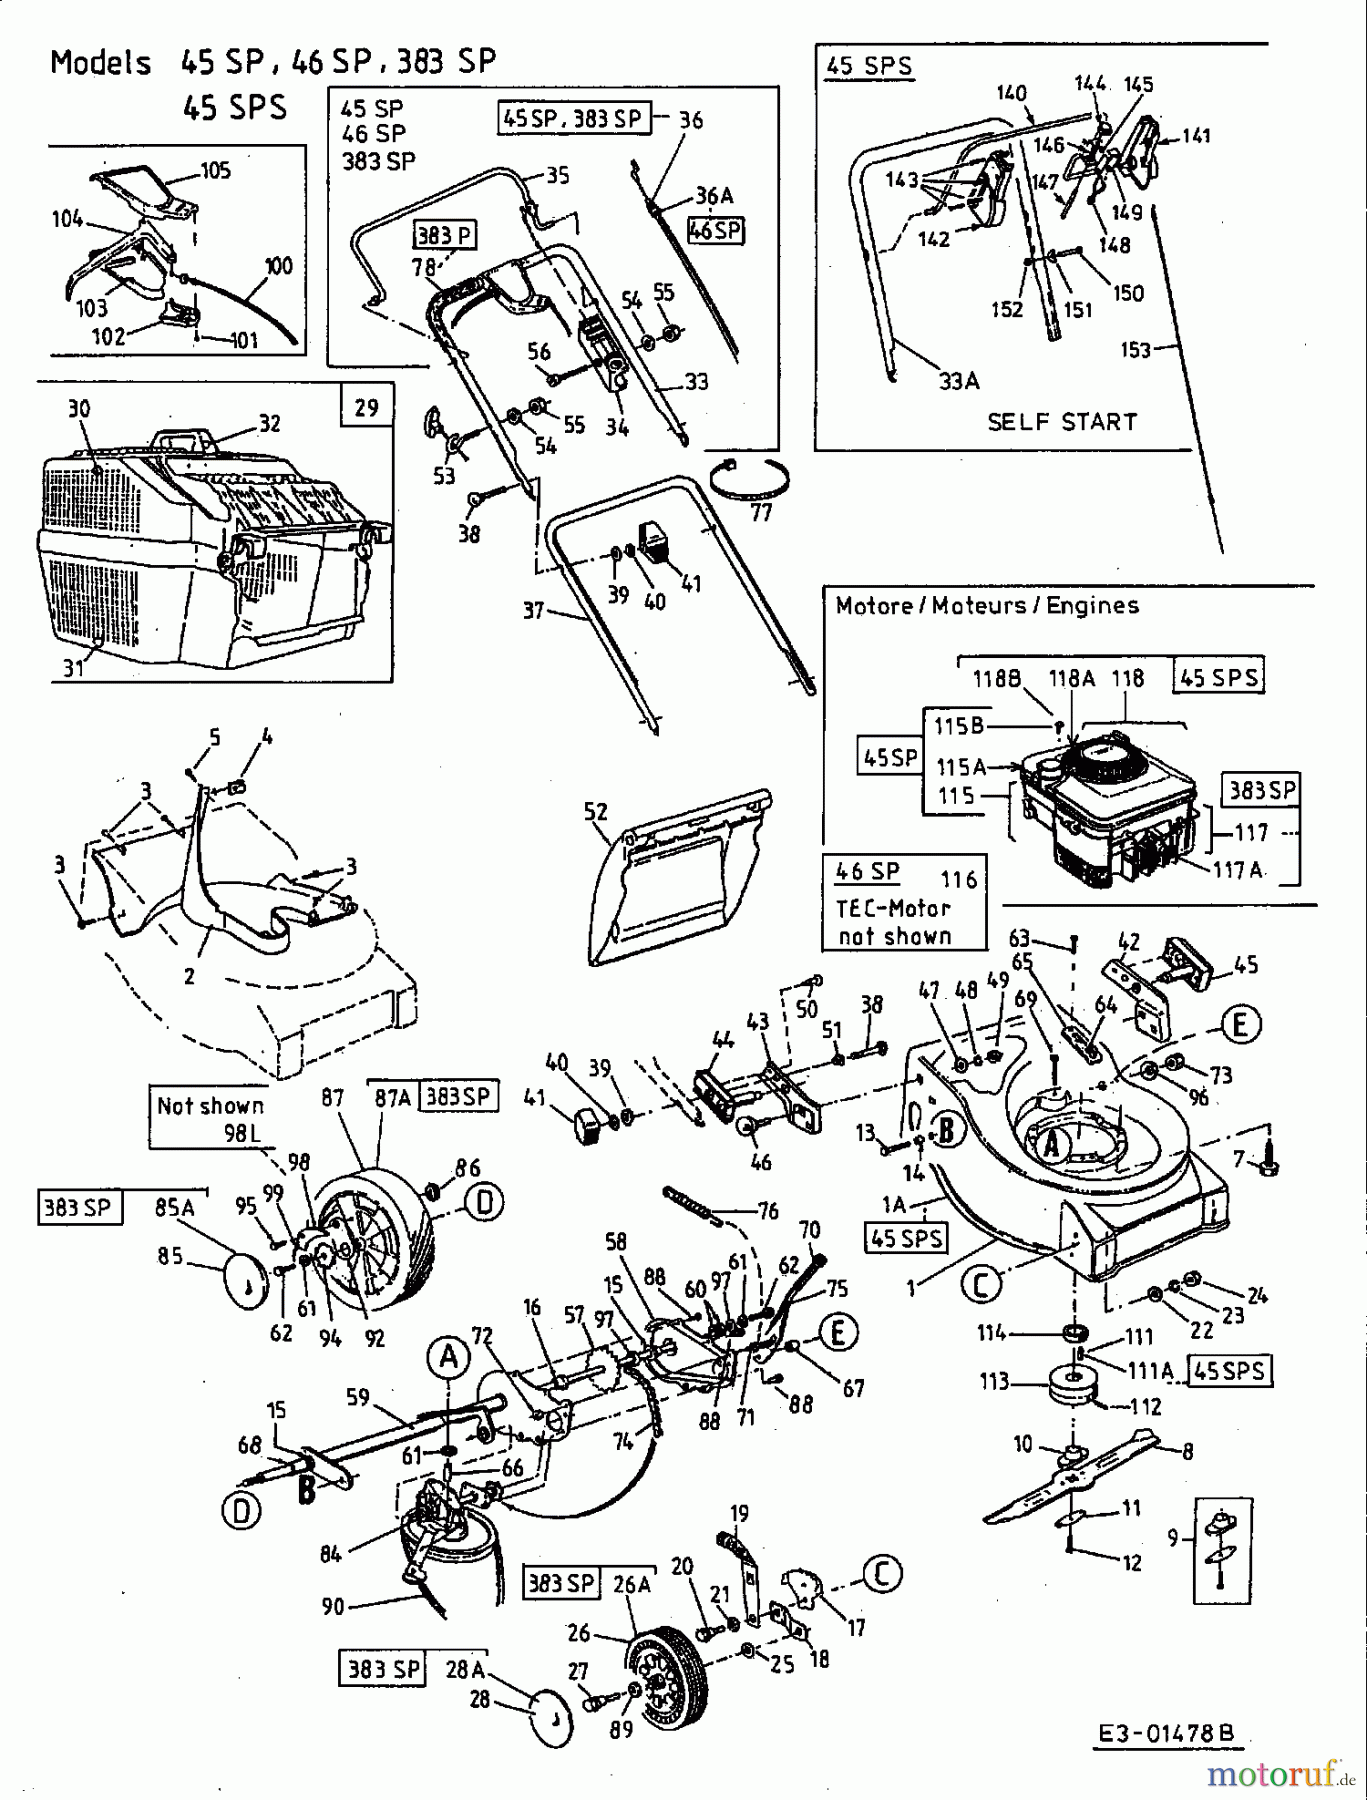  Lawnflite Motormäher mit Antrieb 383 SP 12C-612A611  (2002) Grundgerät